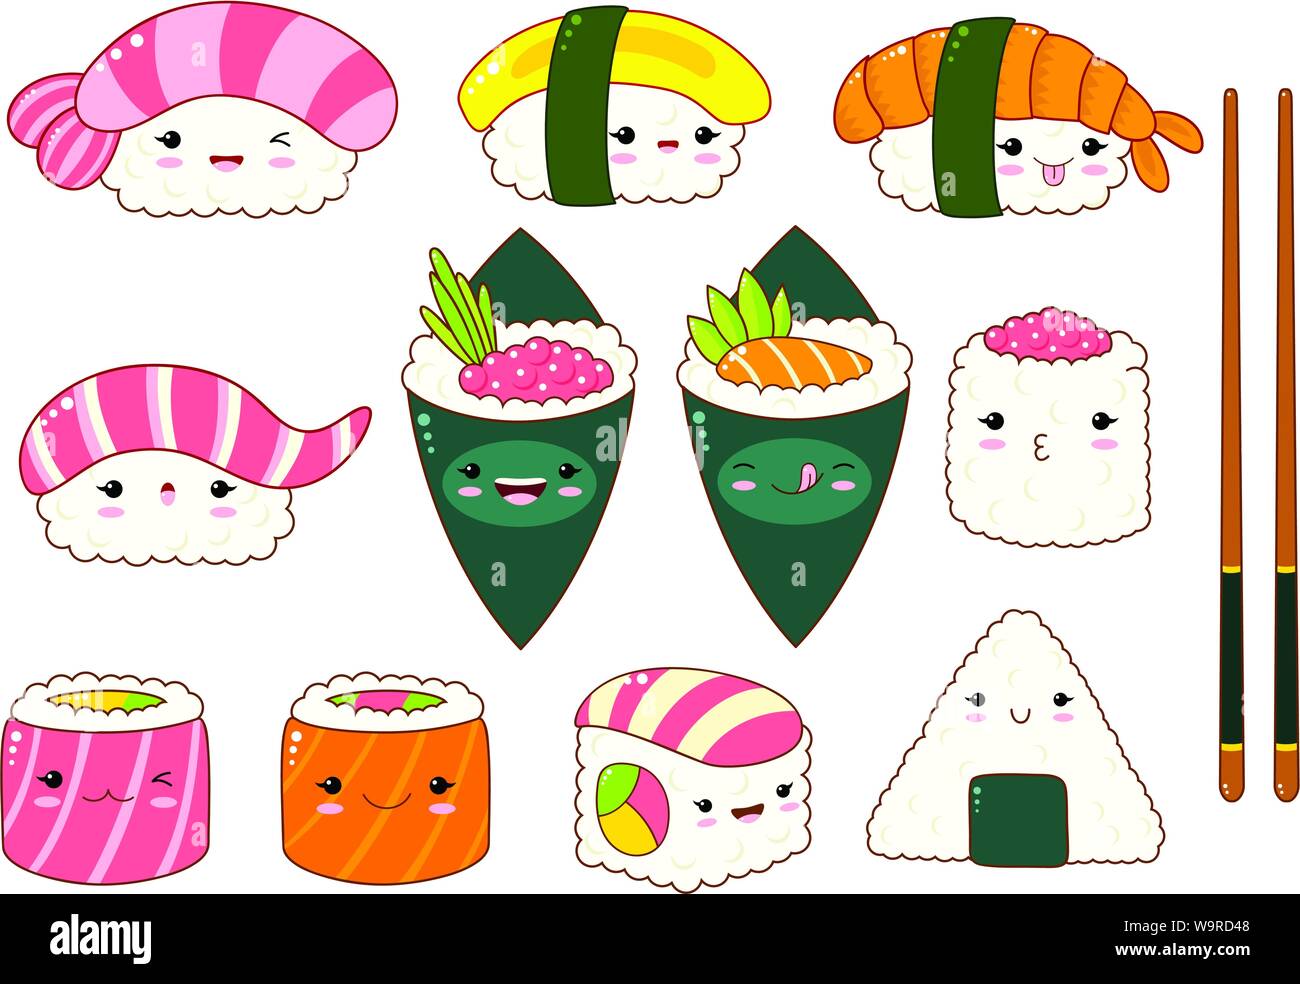 Ensemble de rouleaux de sushi et mignon des icônes dans le style kawaii avec sourire et joues roses. La cuisine traditionnelle japonaise. Temaki, baguettes, nigiri, Illustration de Vecteur